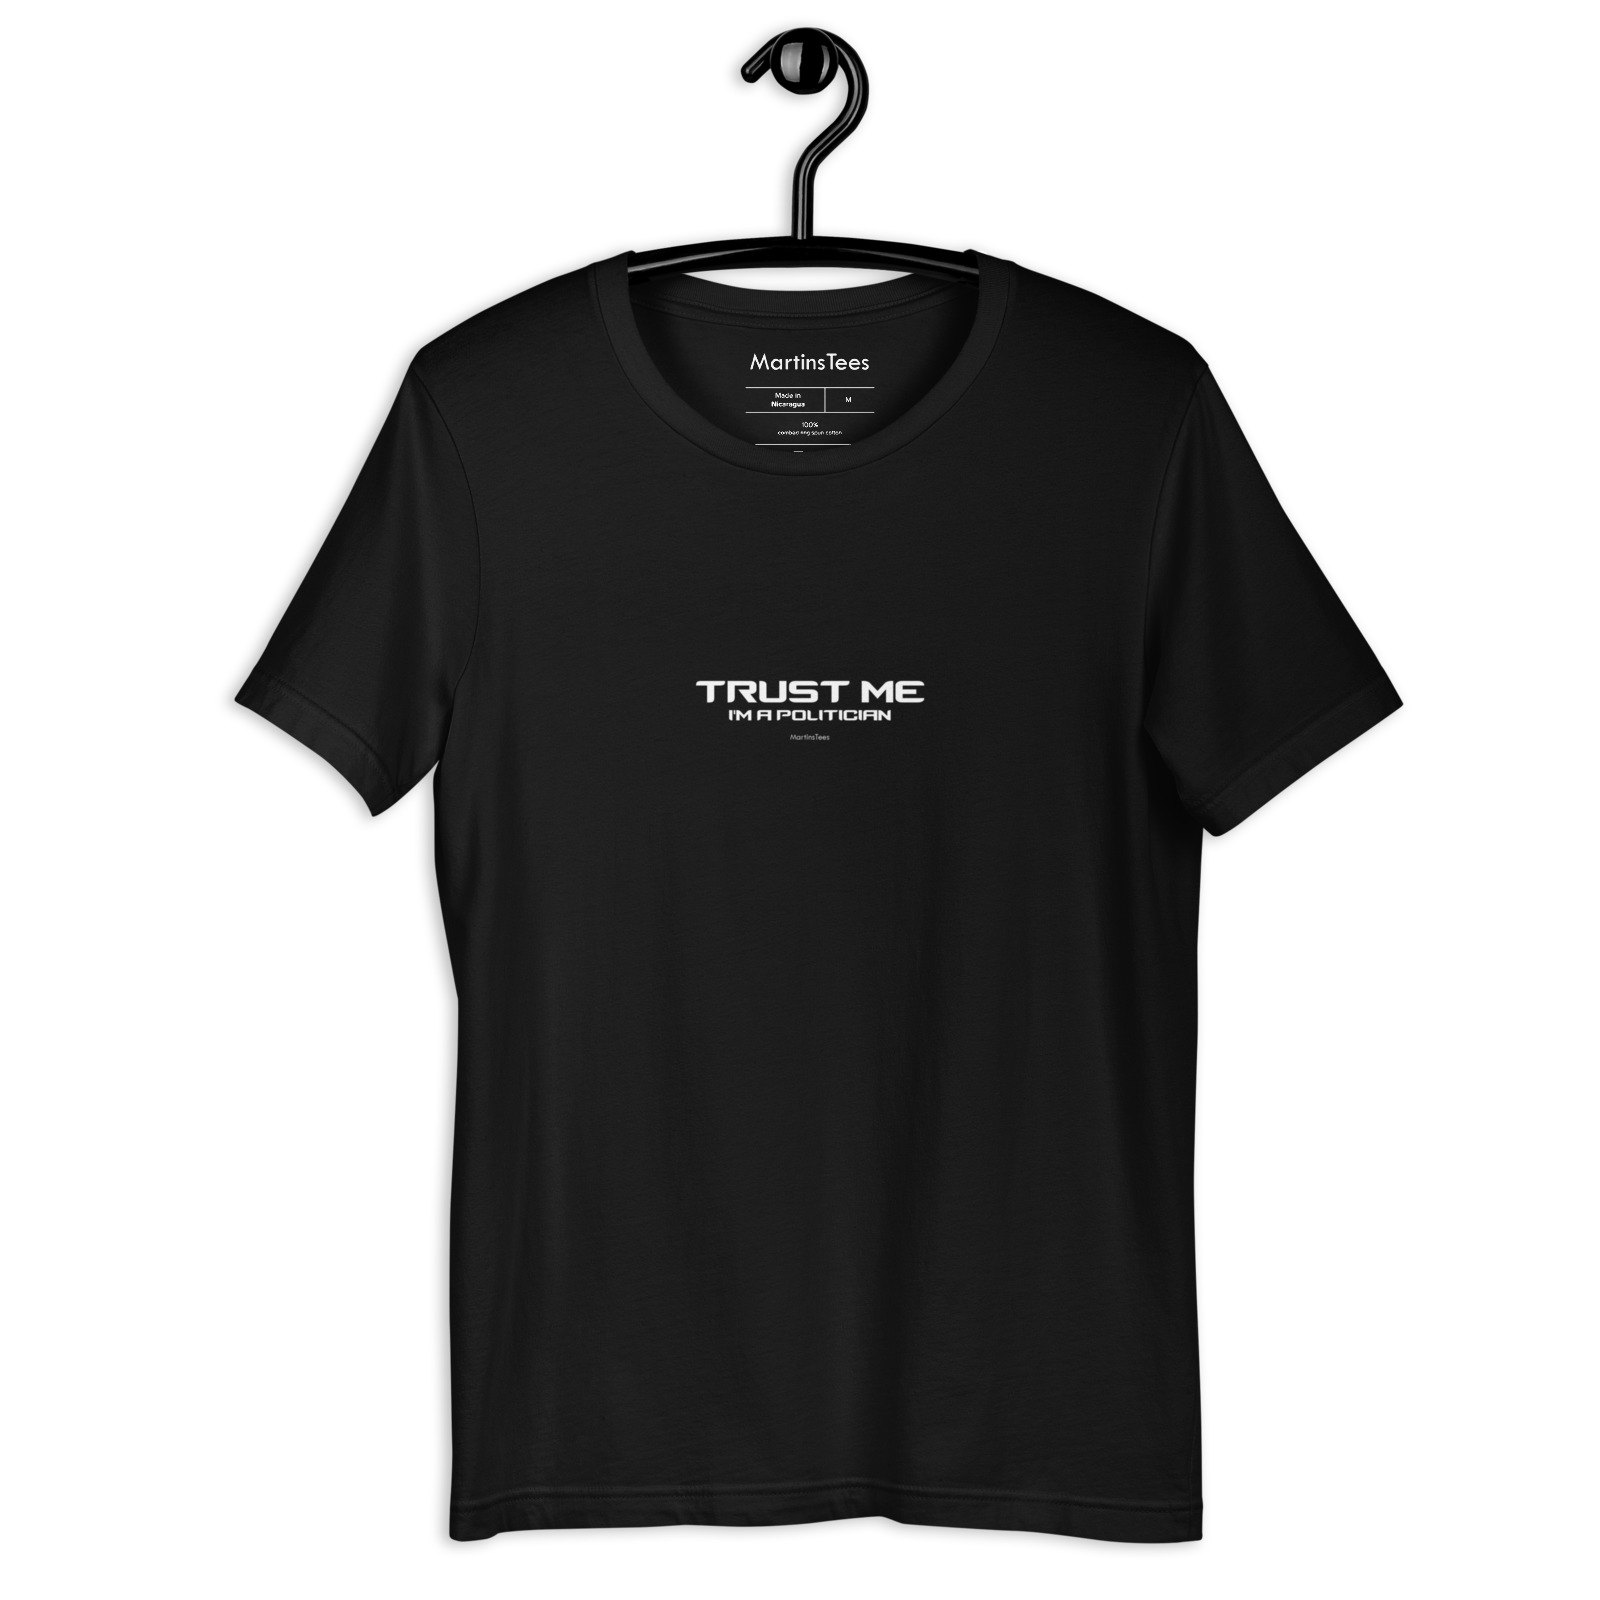 T-shirt: TRUST ME - I'M A POLITICIAN